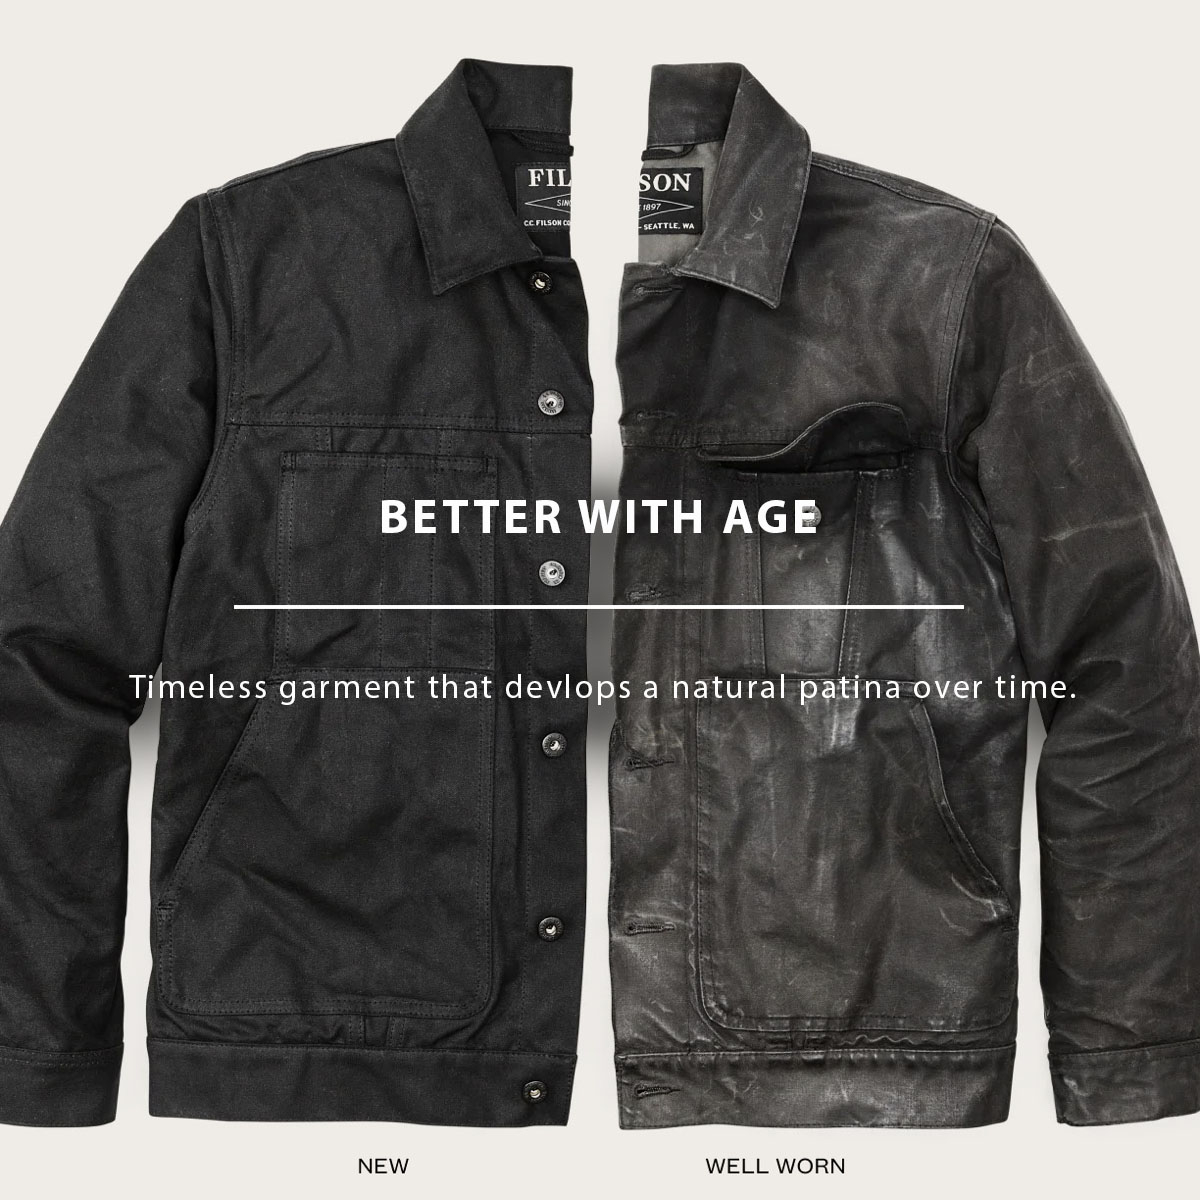 Filson Tin Cloth Short Lined Cruiser Jacket Black, better with age, ein zeitloses Kleidungsstück, das im Laufe der Zeit eine natürliche Patina entwickelt